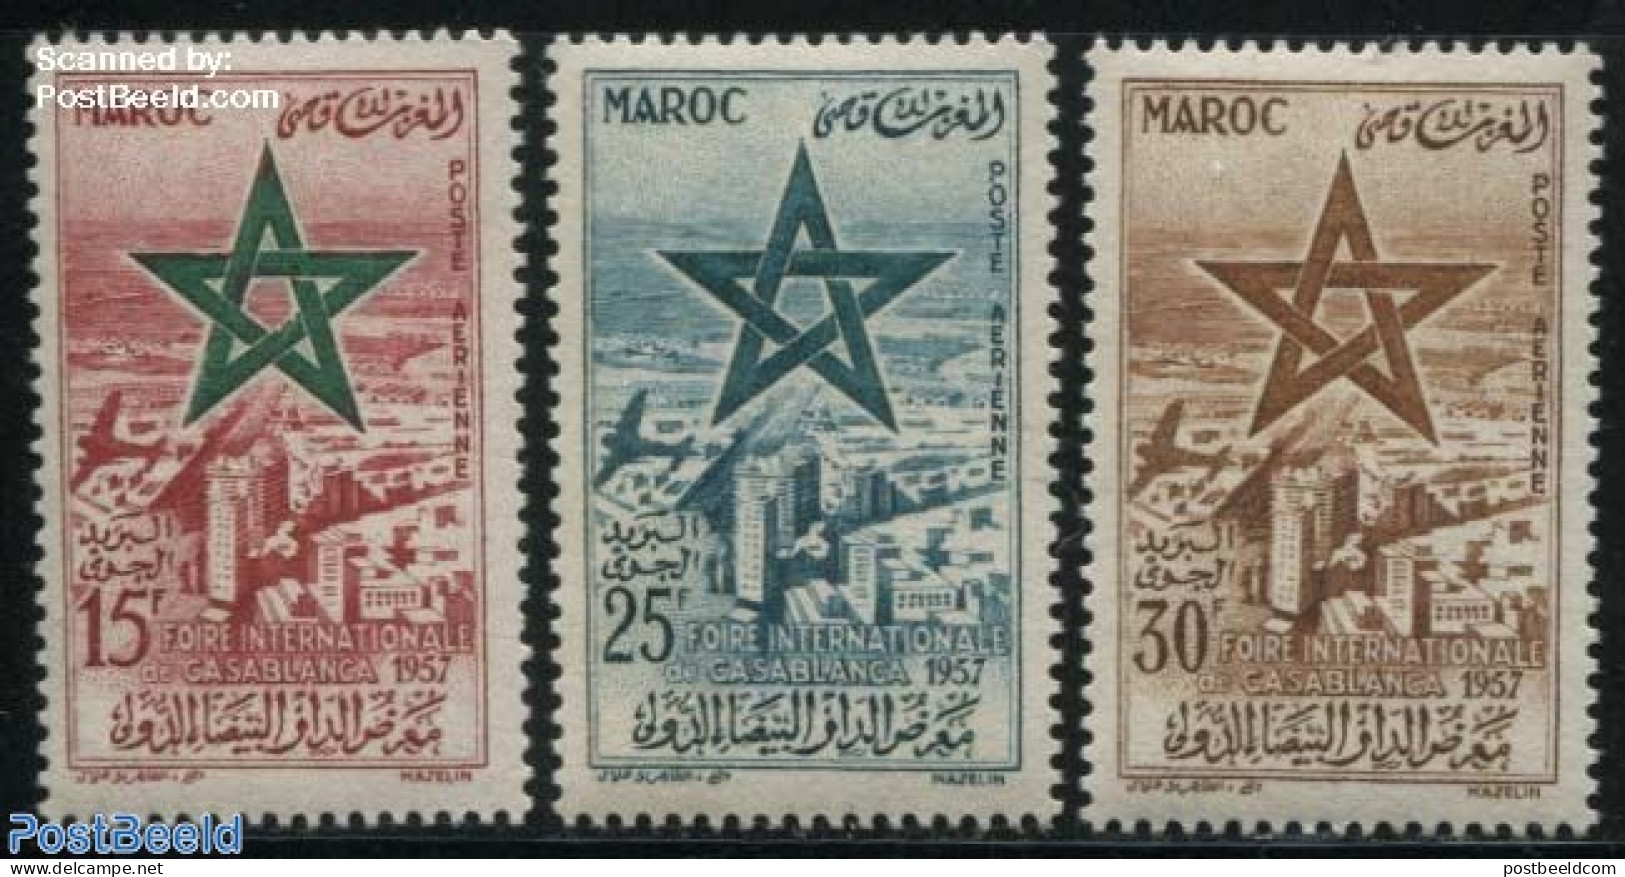 Morocco 1957 Casablanca International Fair 3v, Mint NH, Various - Export & Trade - Fabriken Und Industrien